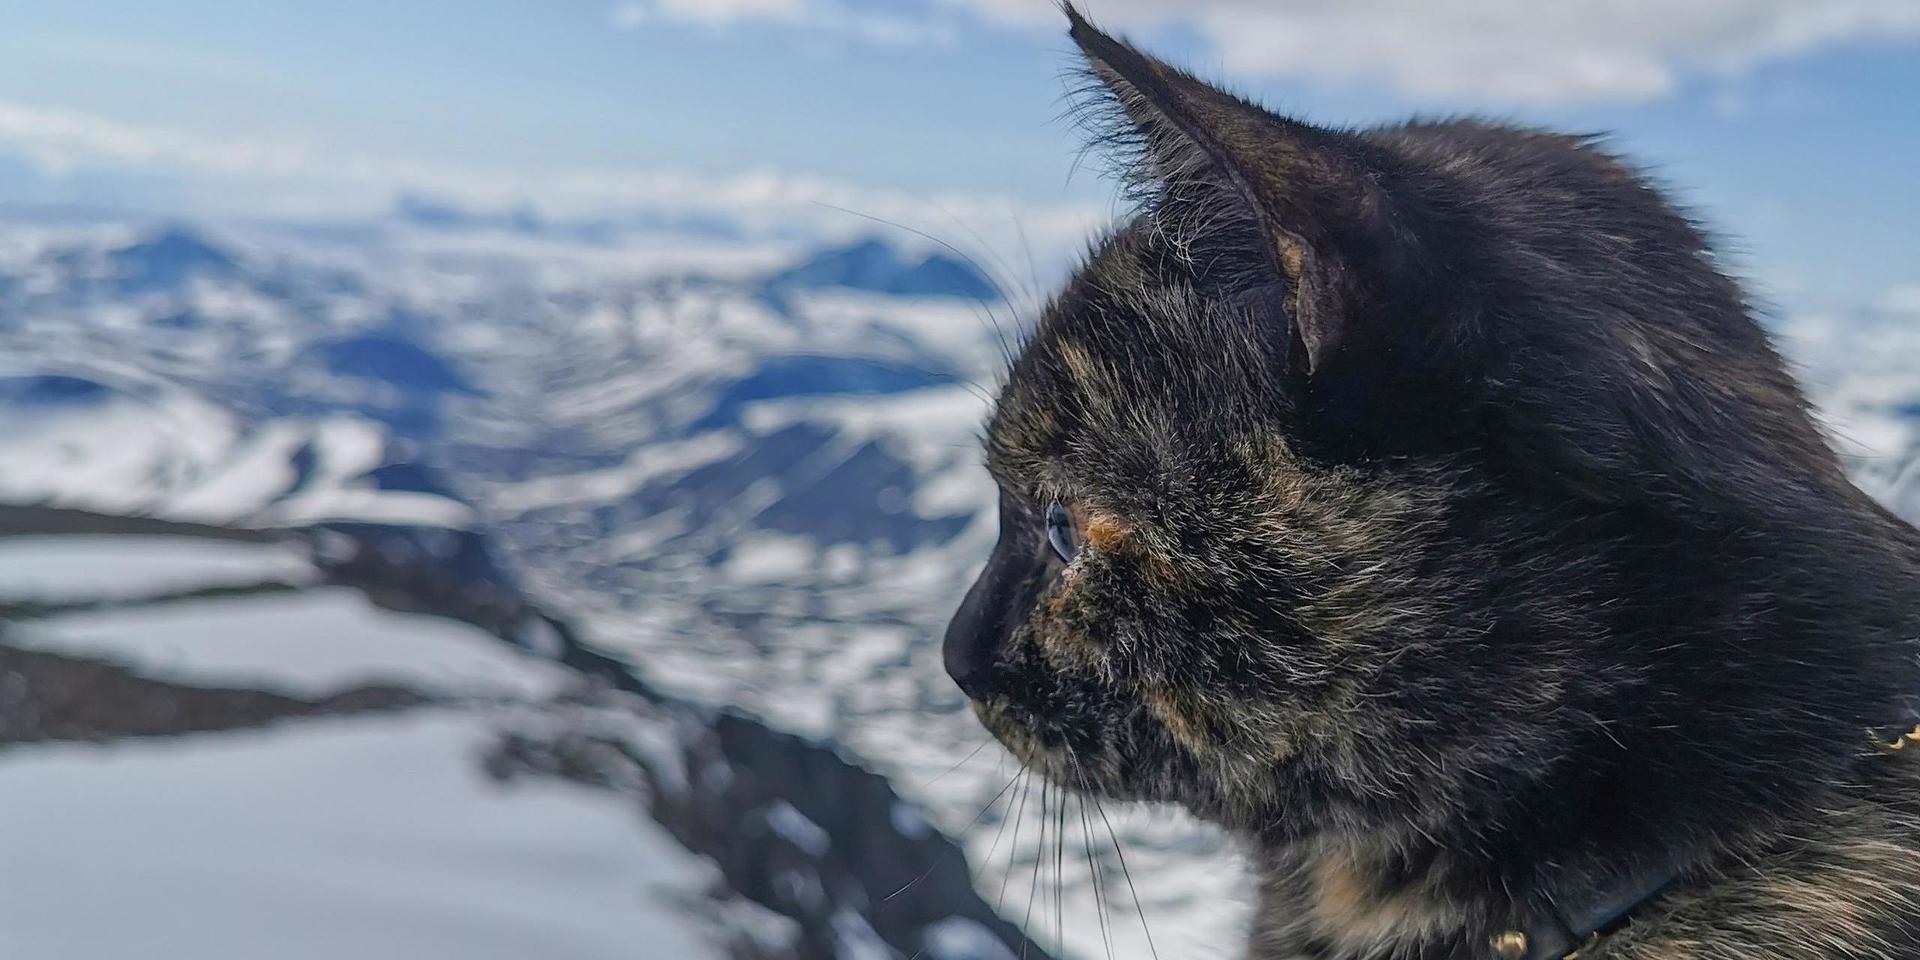 Kattis kollar in utsikten från Sveriges högsta berg.